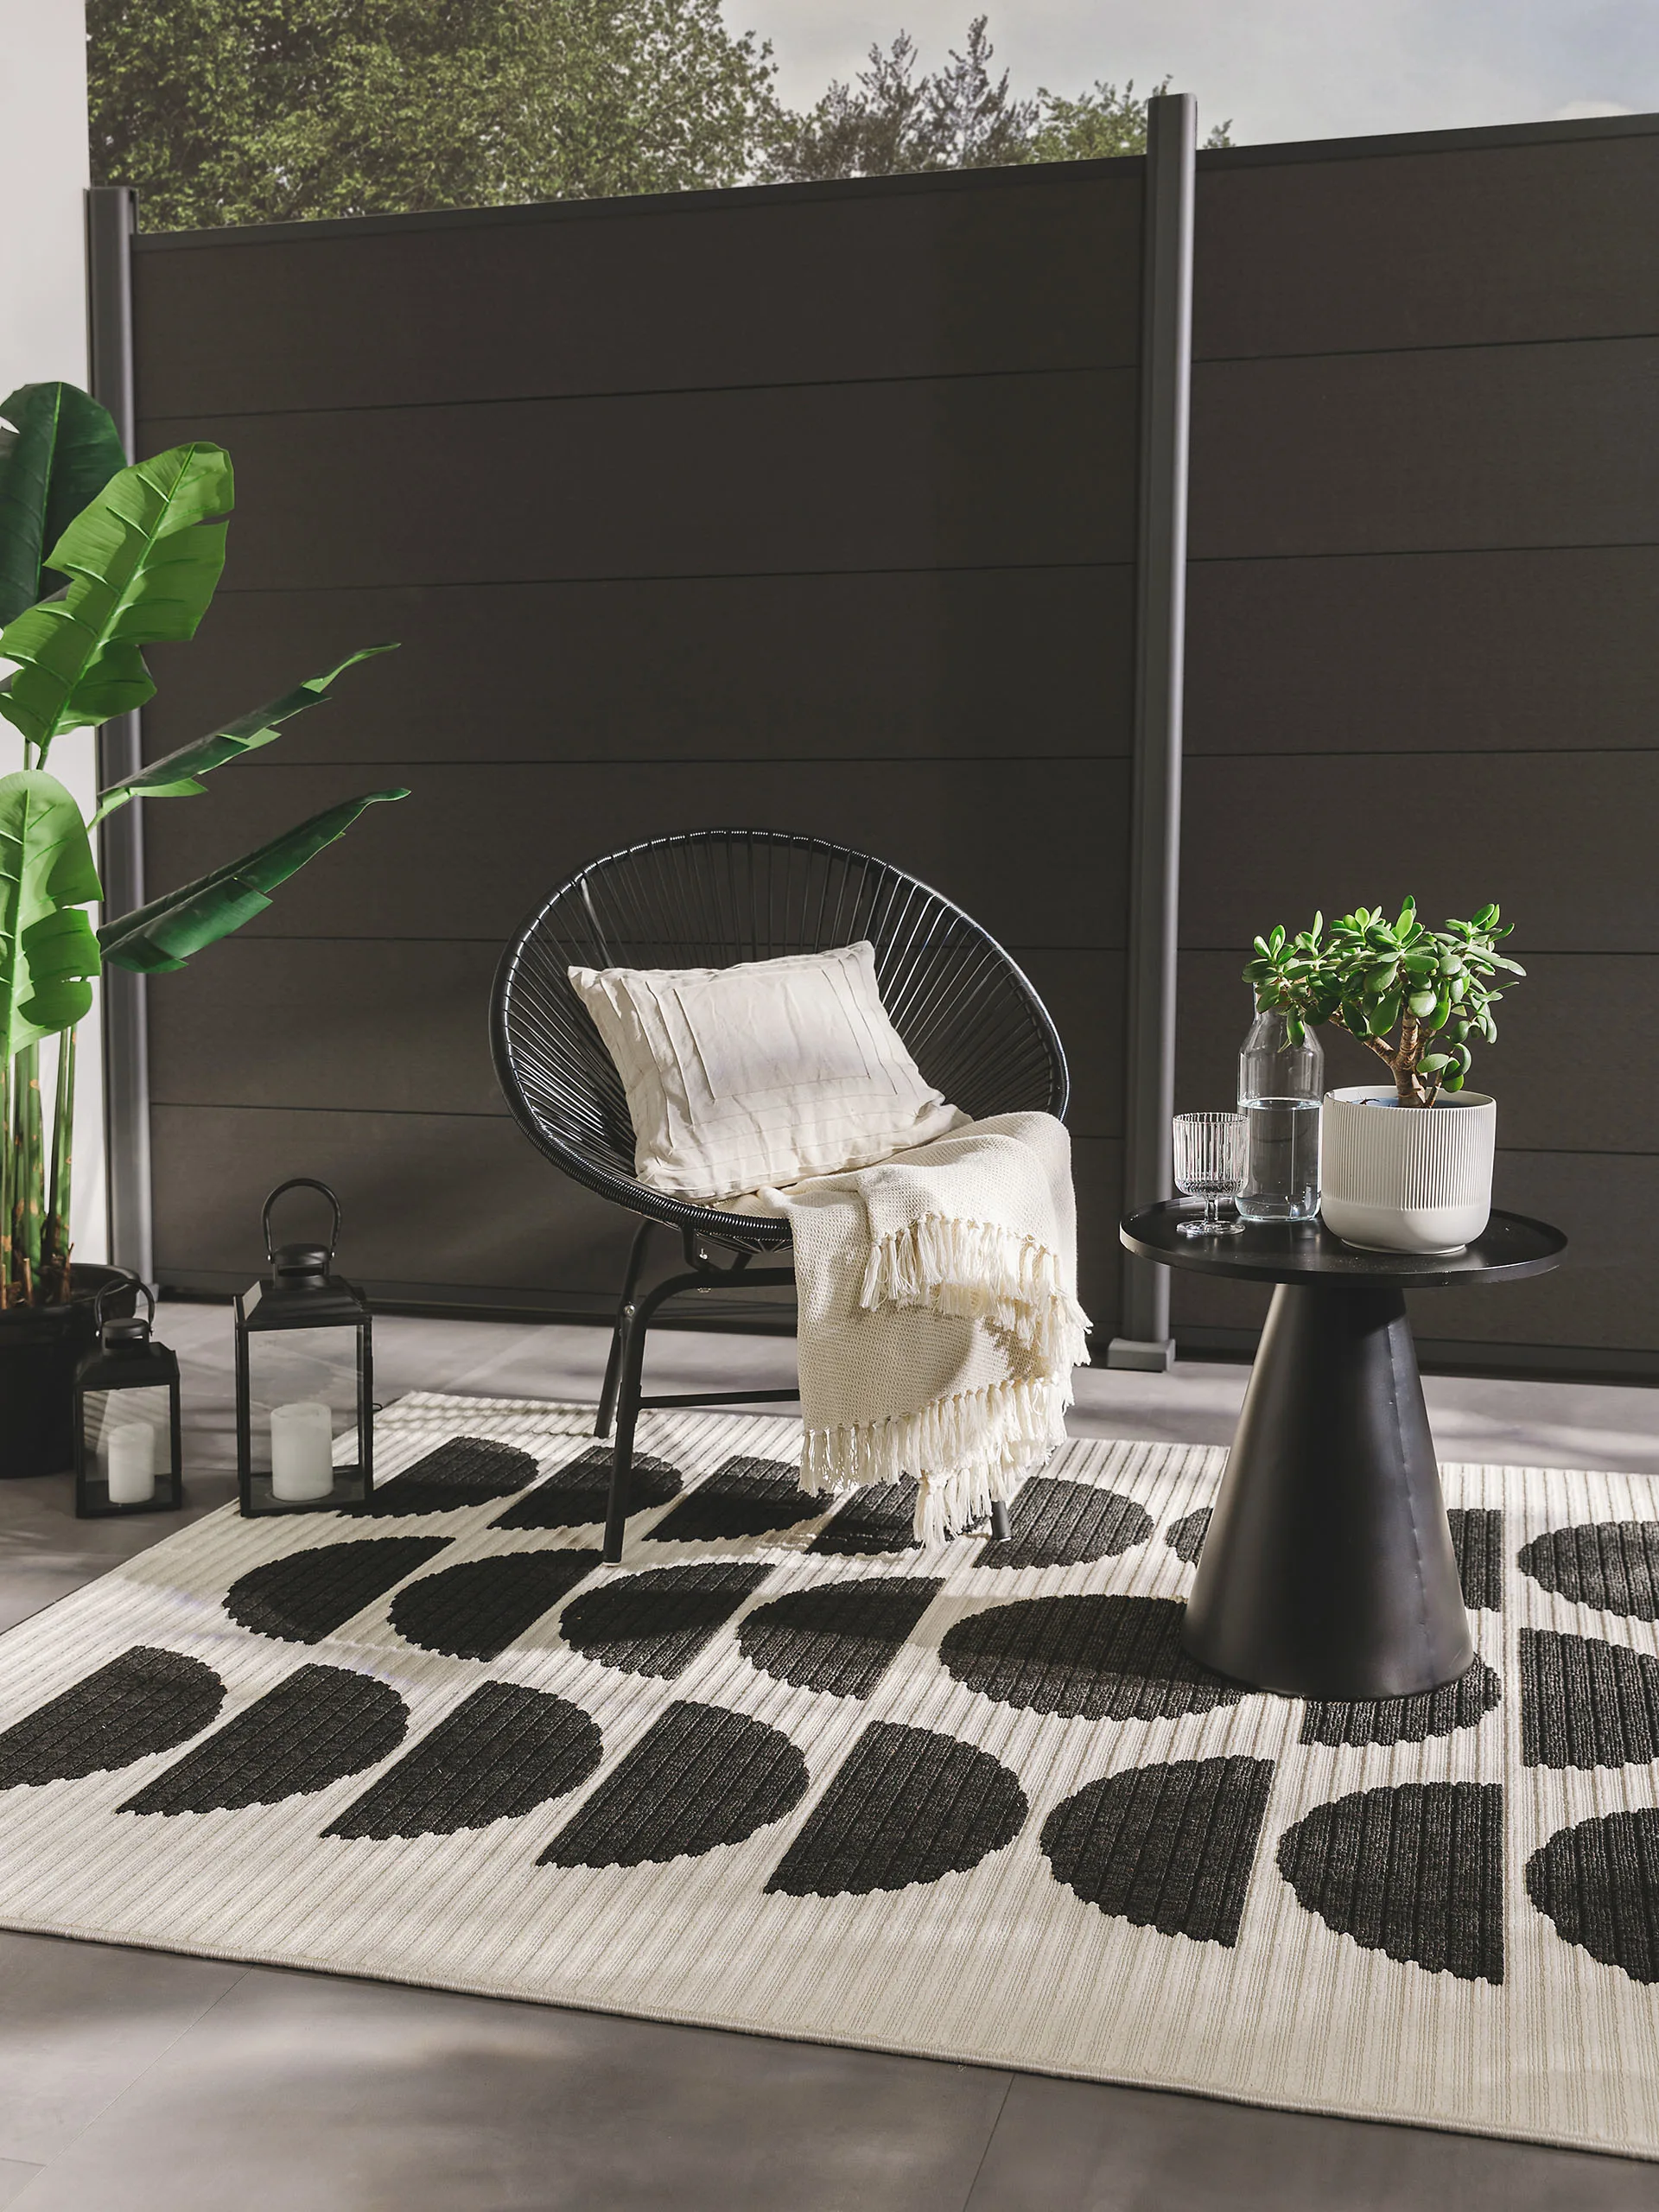 Stillvolle Gartendeko mit schwarz-weißem Outdoor-Teppich und einem schwarzen Sessel mit Beistelltisch und günstigen Dekoelementen wie Laternen, Kissen, Decken und Pflanzen